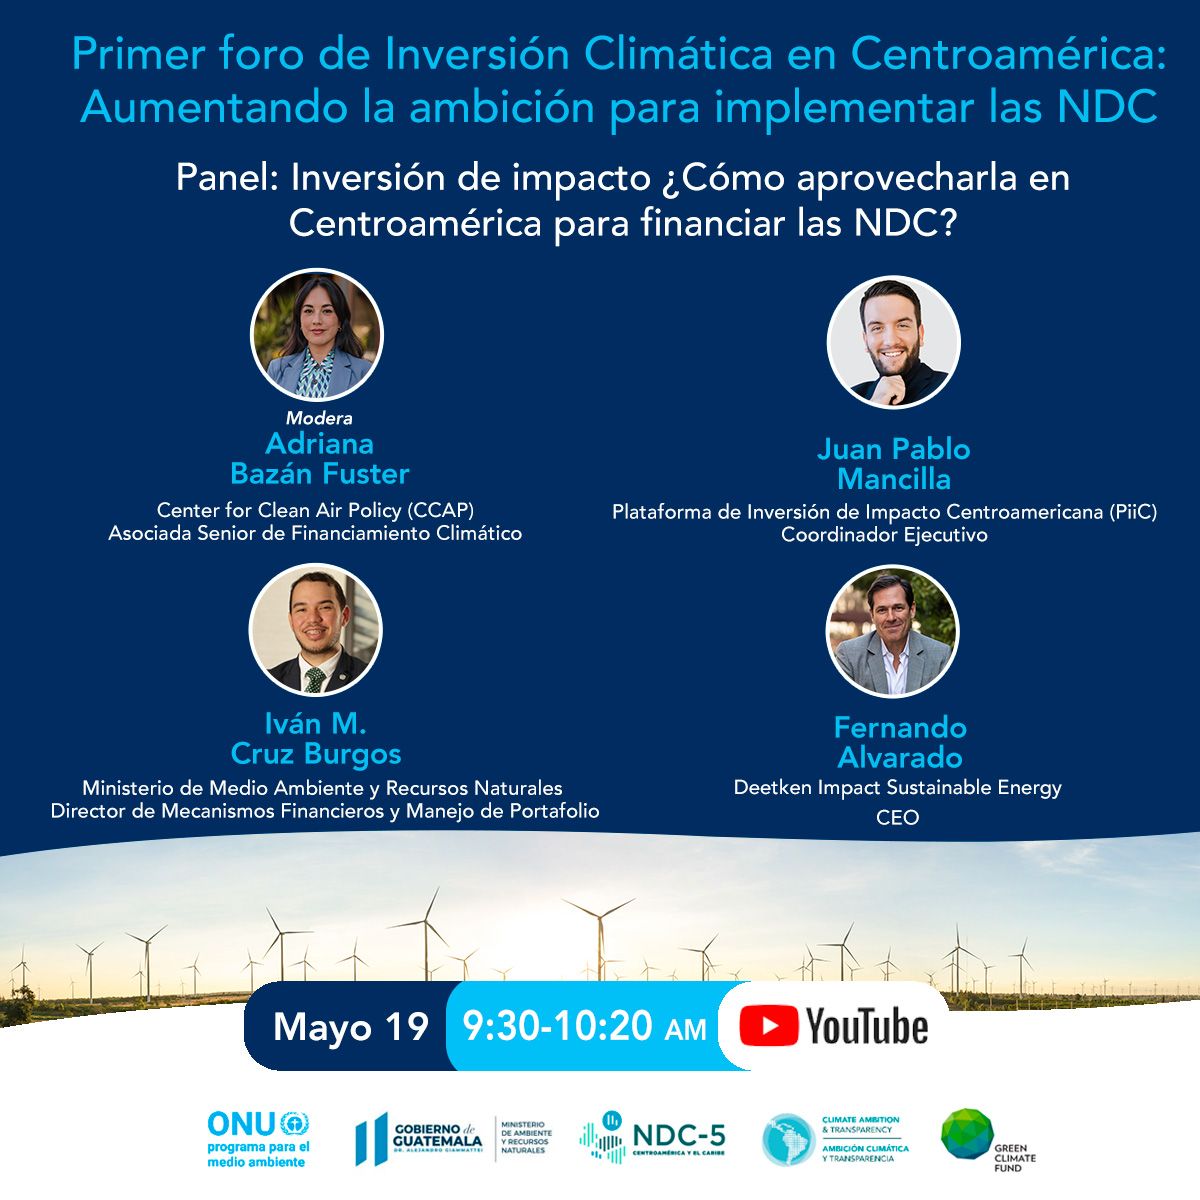 Primer Foro de Inversión Climática en Centroamérica: Inversión de impacto ¿Cómo aprovecharla en Centroamérica para financiar las NDC?